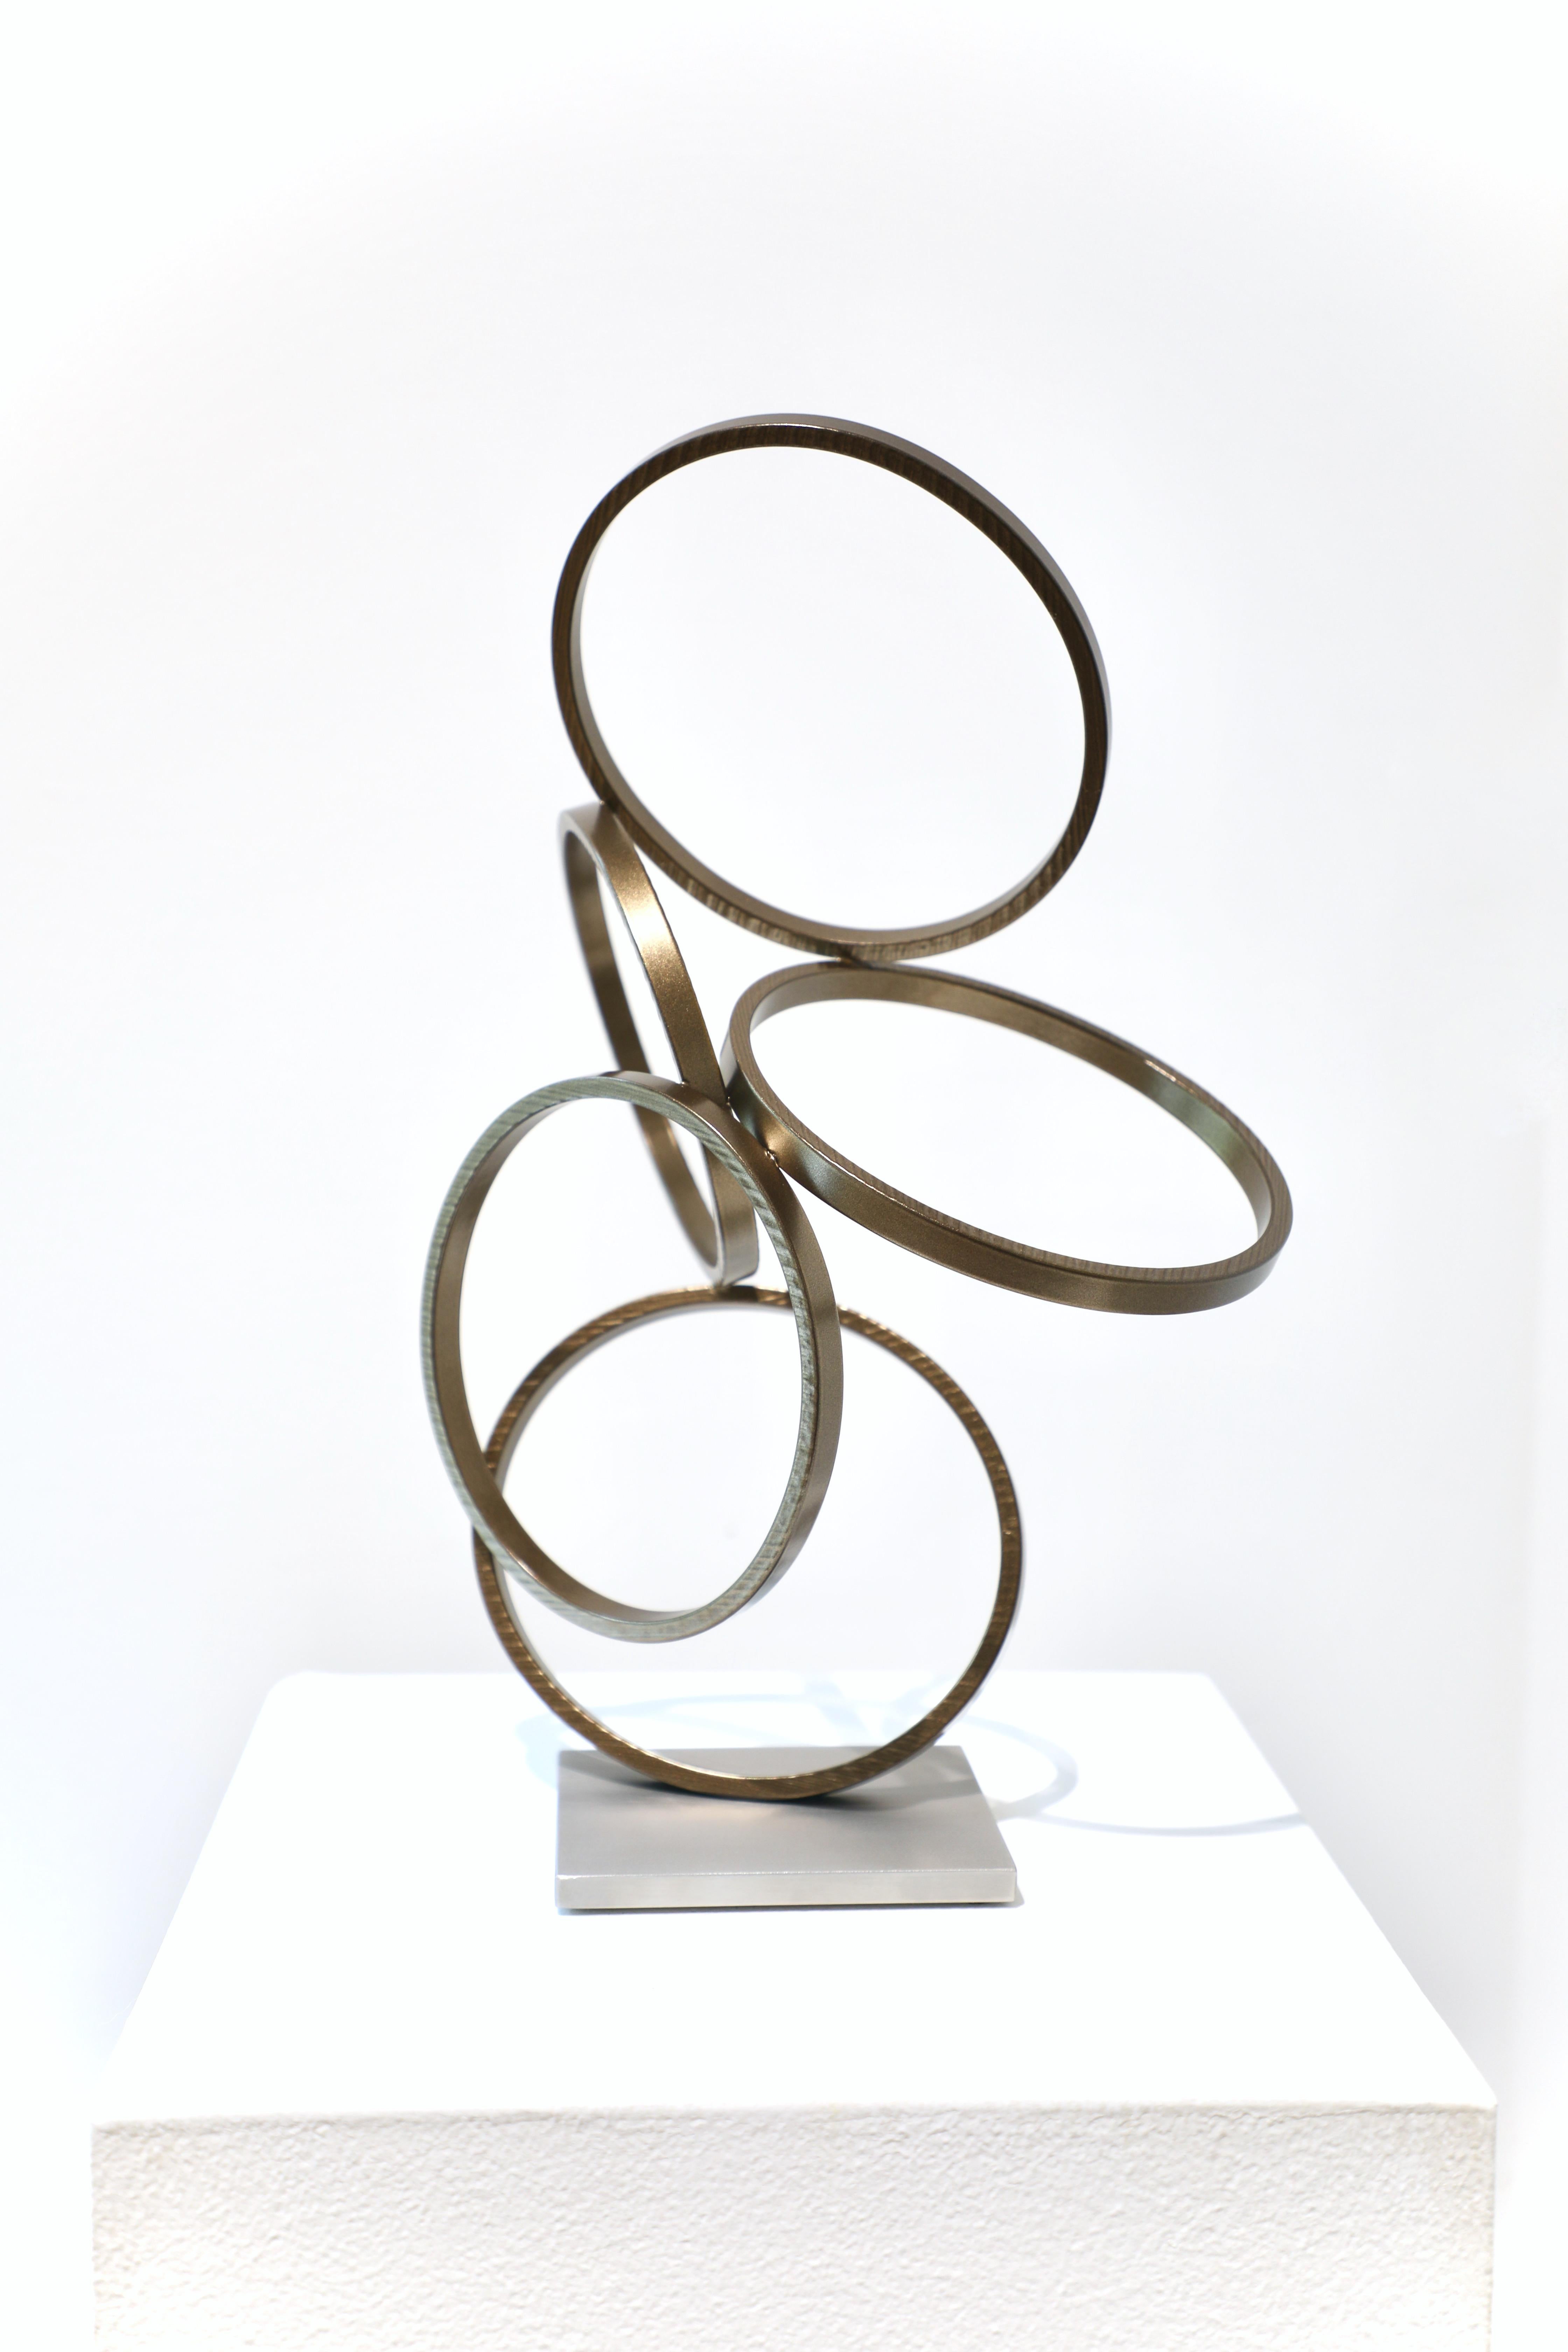 Matt Devine Abstract Sculpture - PS Study